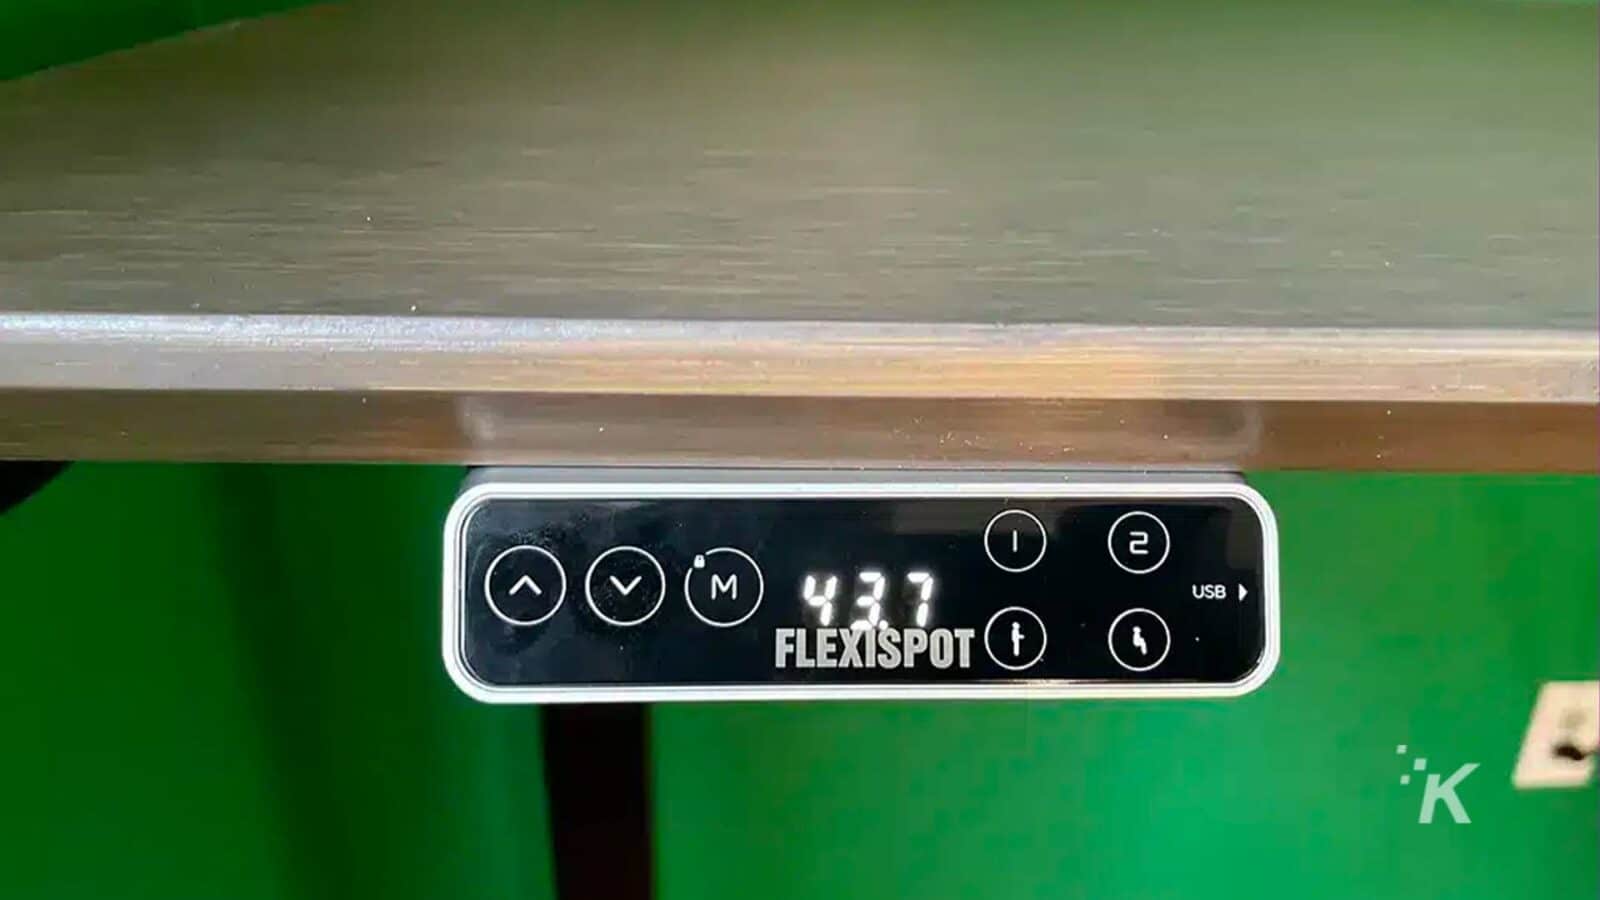 L'immagine mostra un cavo USB collegato a un dispositivo FlexiSpot. Testo completo: - VM) 437 2 1 USB od FLEXISPOT K